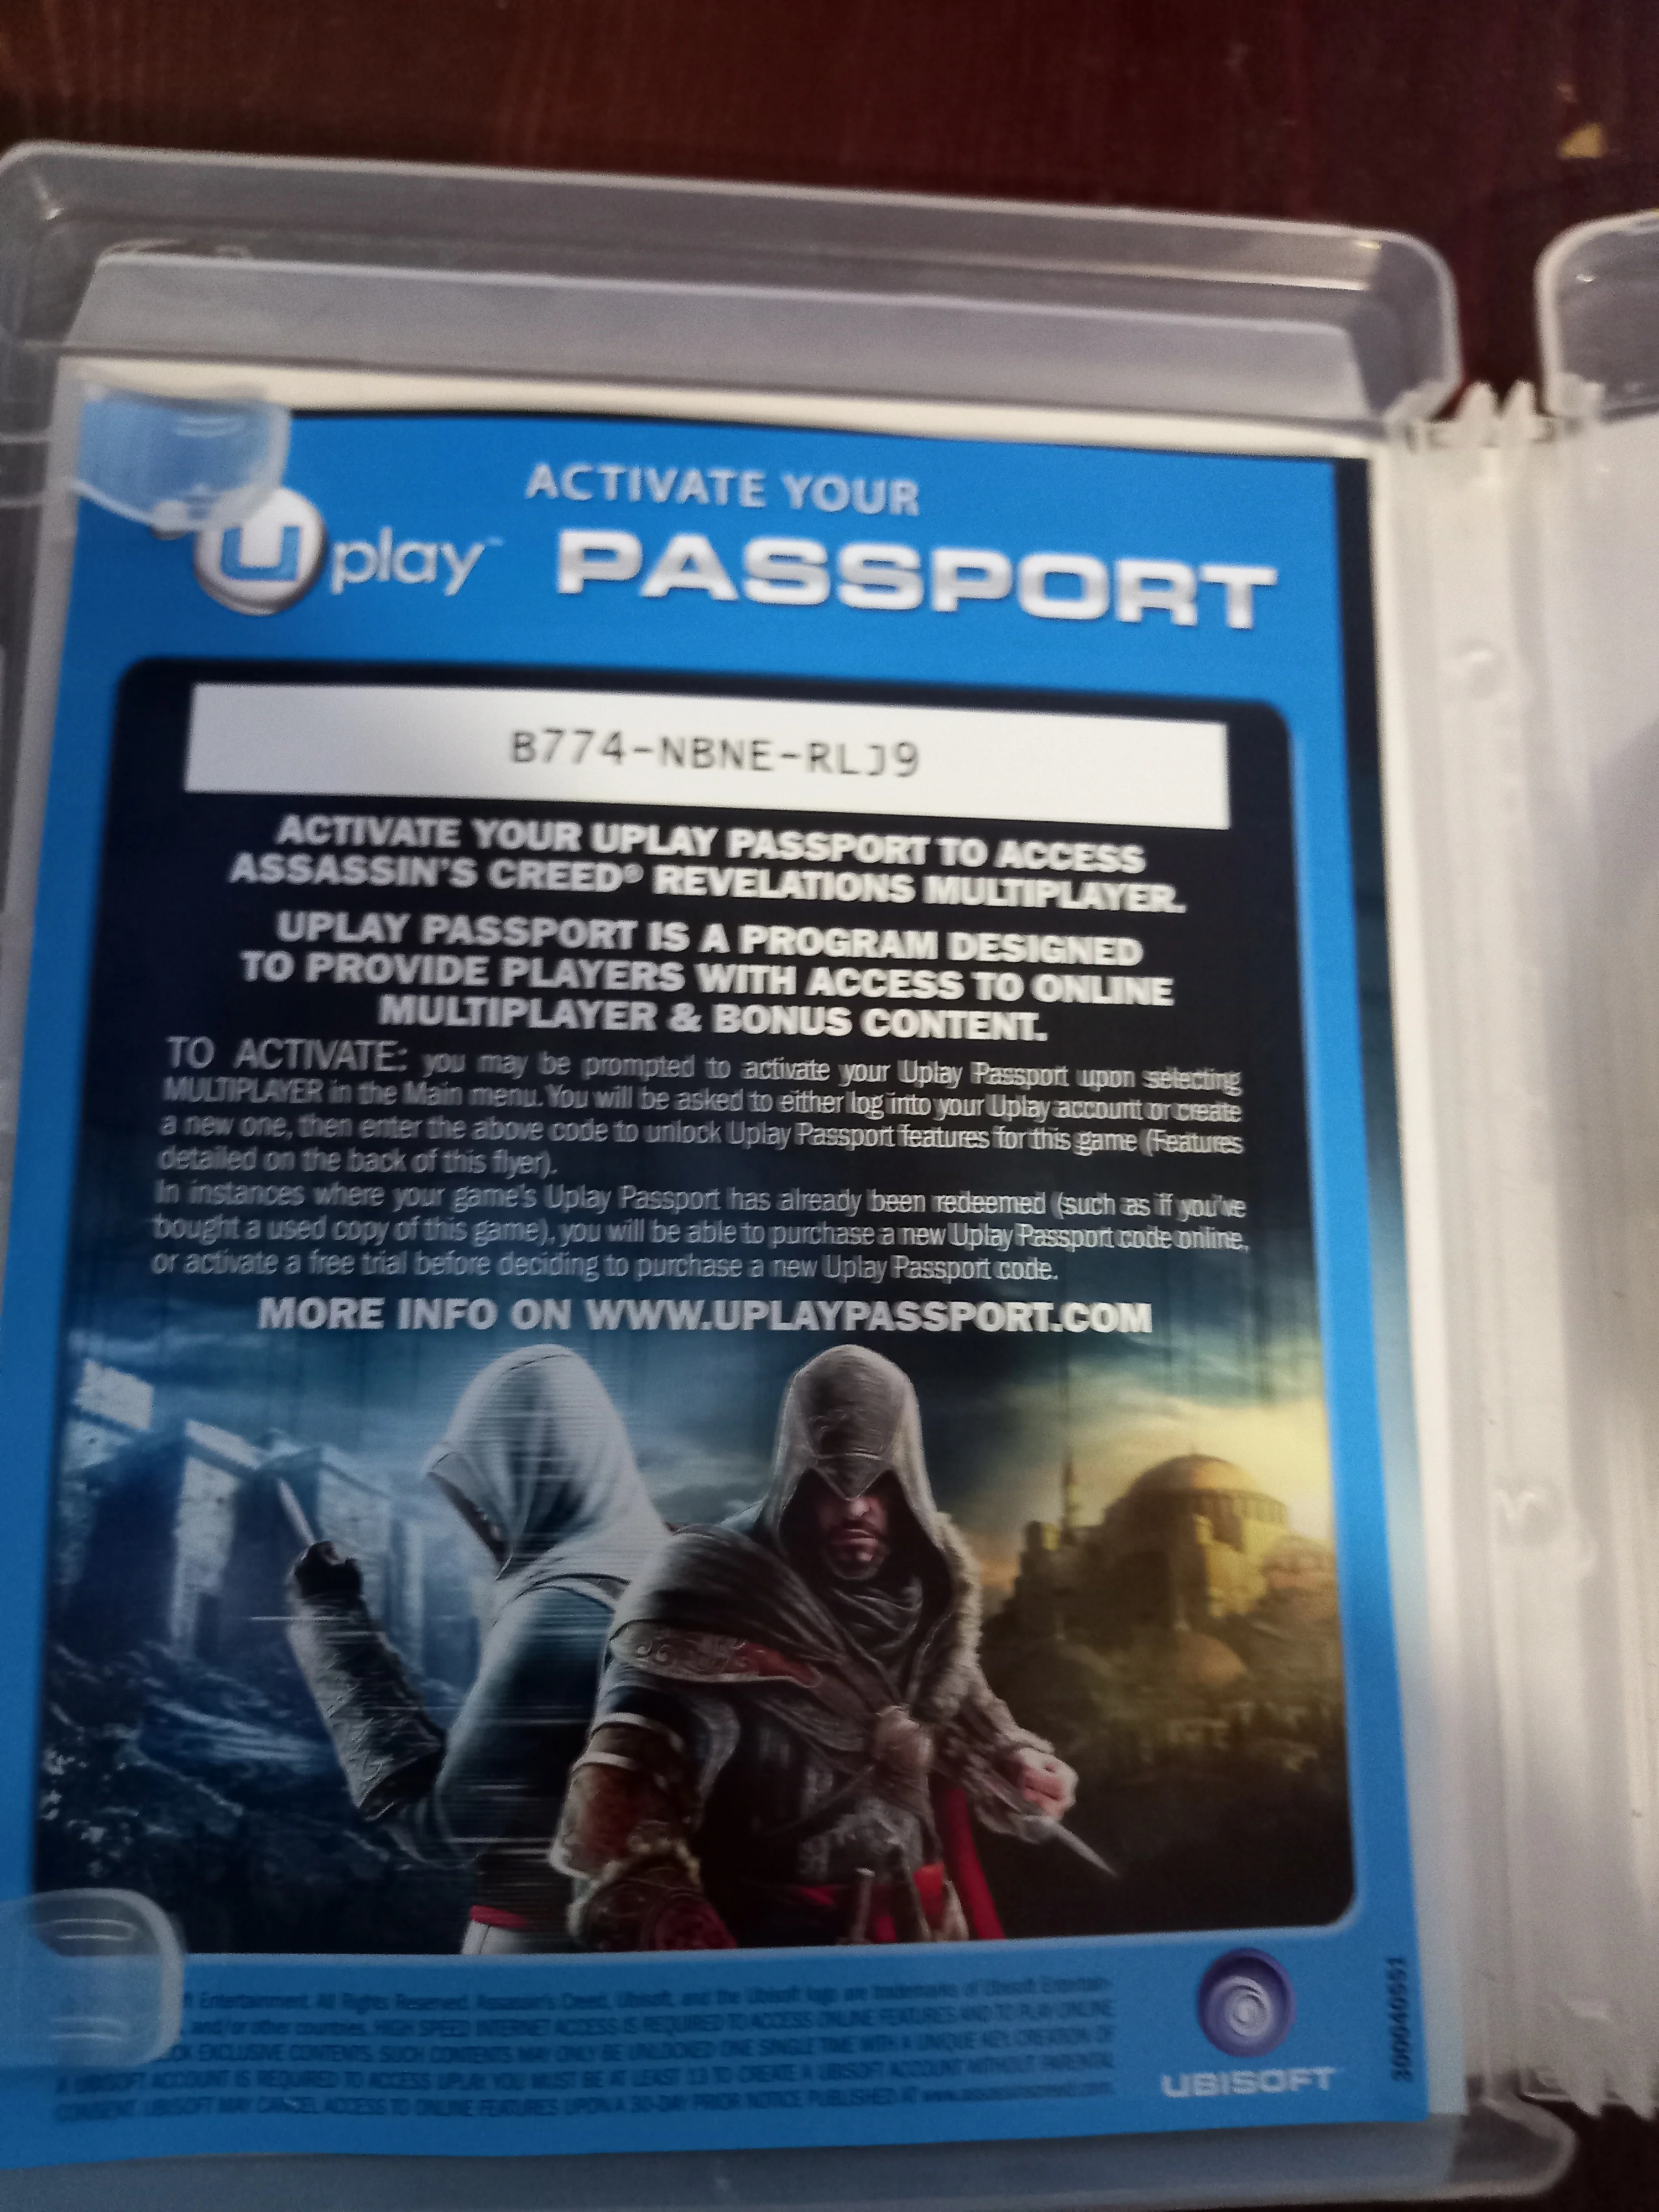 Игра Assassin's Creed: Откровения. Специальное Издание (ps3) Б/у (rus) -  Game Deals - AliExpress